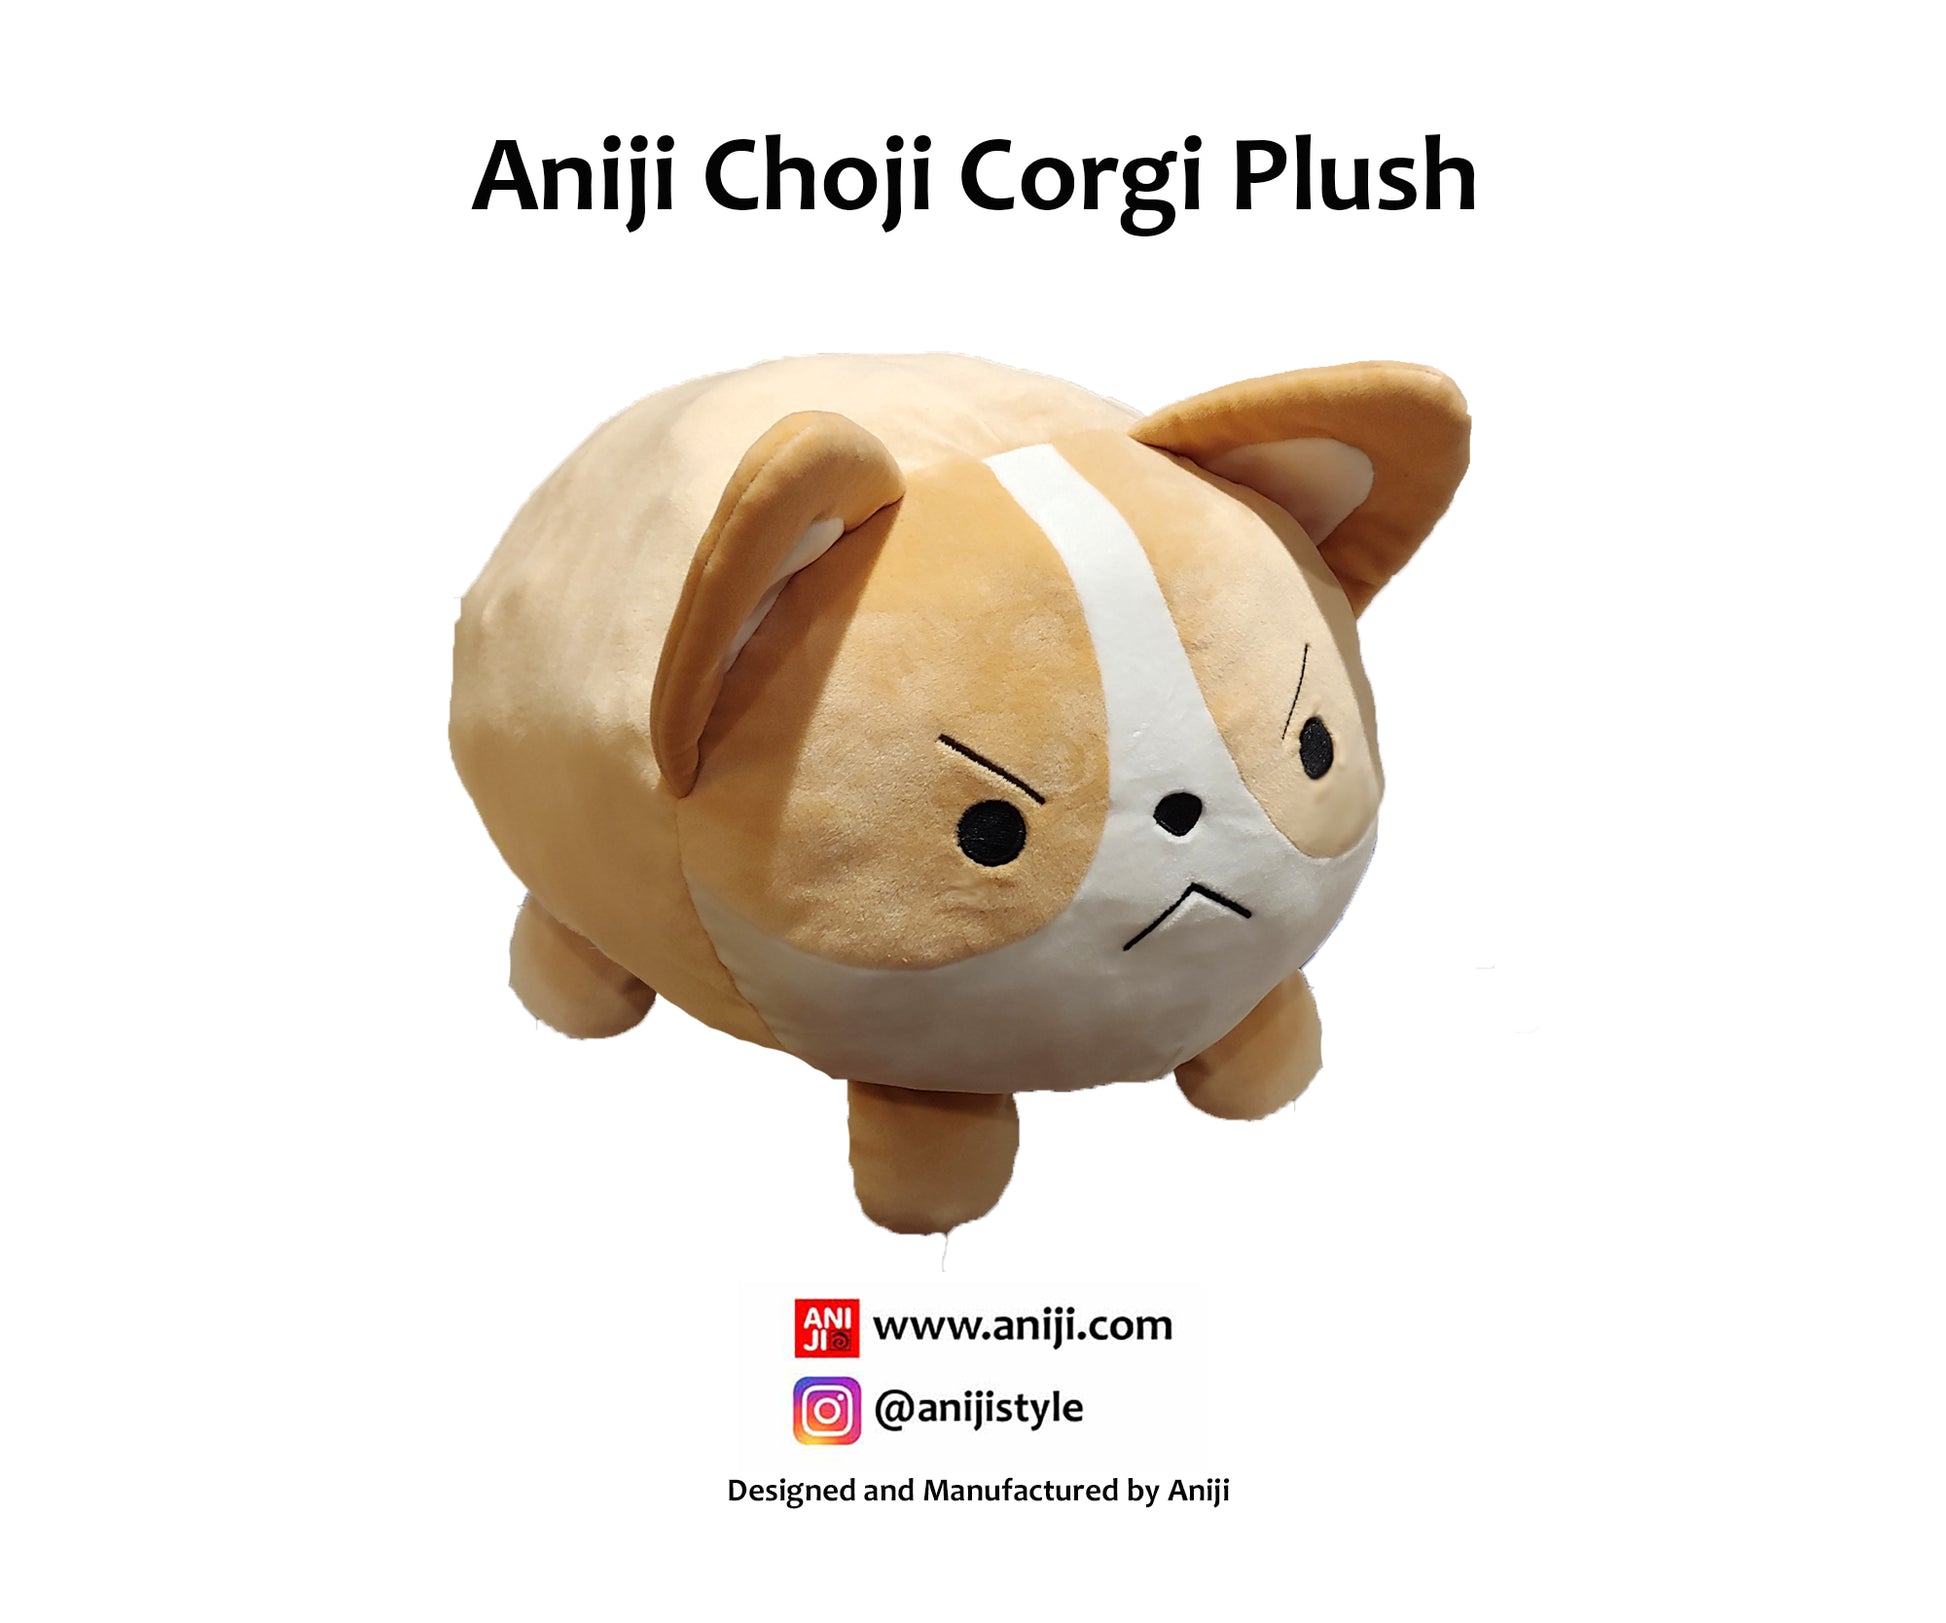 angry corgi